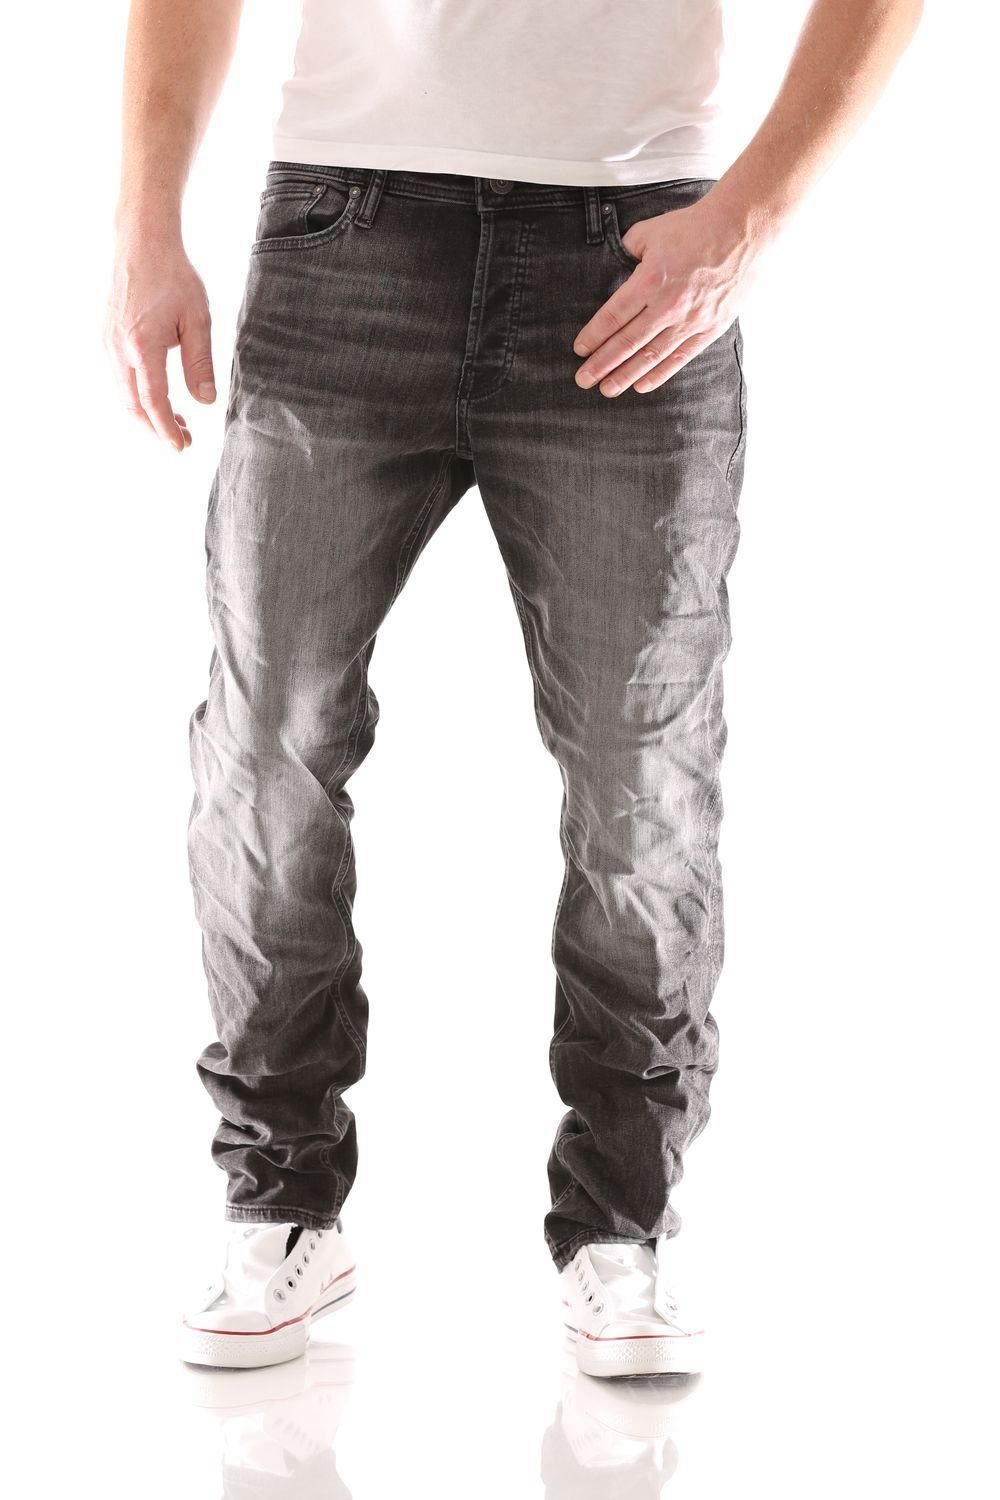 Jones Comfort (817 Comfort-fit-Jeans & Denim) Schwarz Black Jones Jeans Jack Jack Original Fit & Hose Herren Mike